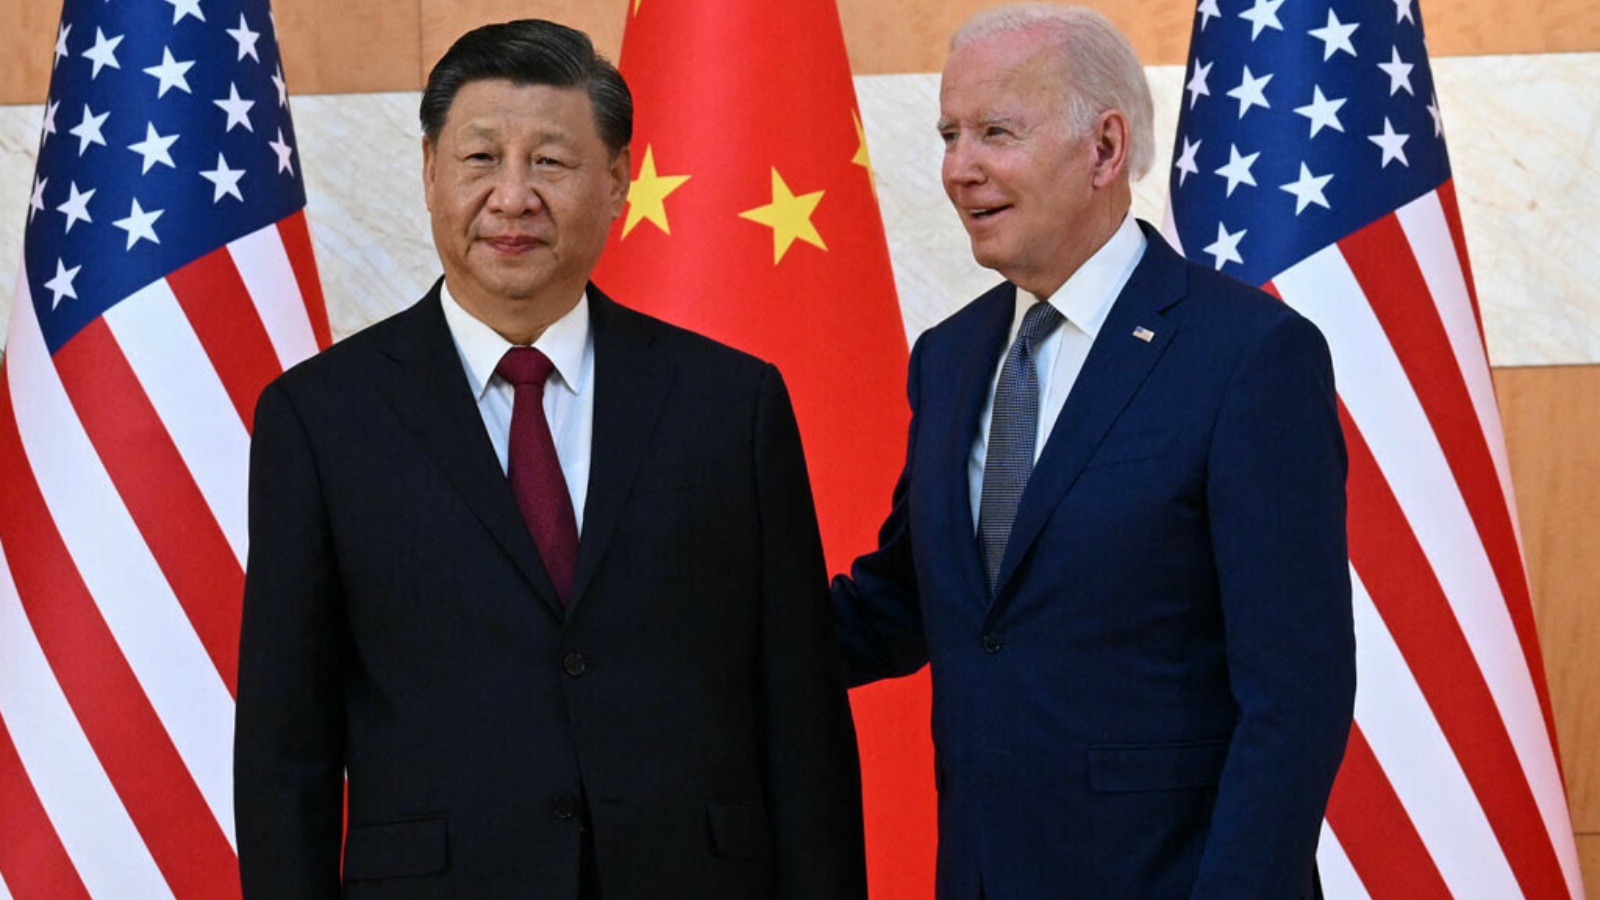 الرئيس الأميركي جو بايدن (إلى اليمين) والرئيس الصيني شي جينبينغ (إلى اليسار) يلتقيان على هامش قمة مجموعة العشرين في نوسا دوا في منتجع جزيرة بالي الإندونيسية في 14 نوفمبر.